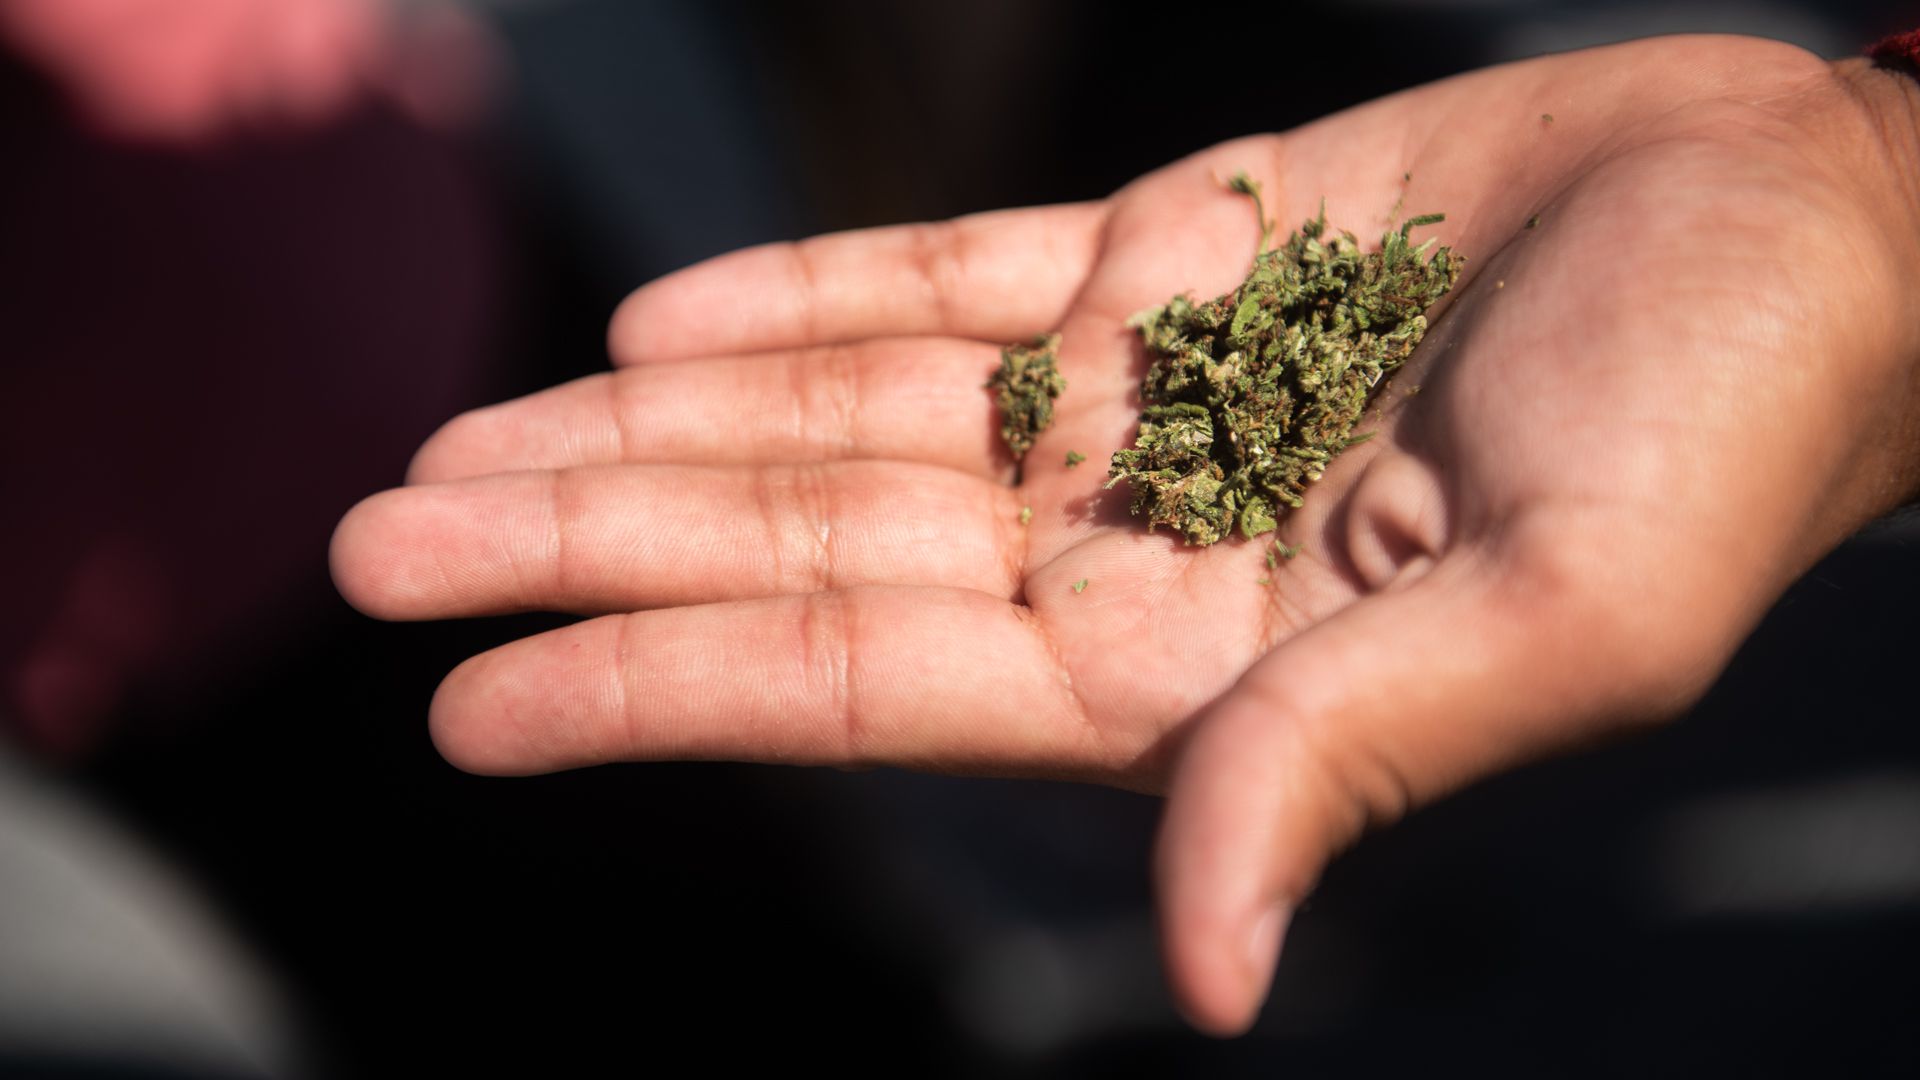 En Colombia se permite el porte de la dosis mínima que son 20 gramos de marihuana, 5 gramos de hachís, uno de cocaína -o sus derivados- y dos gramos de metacualona.